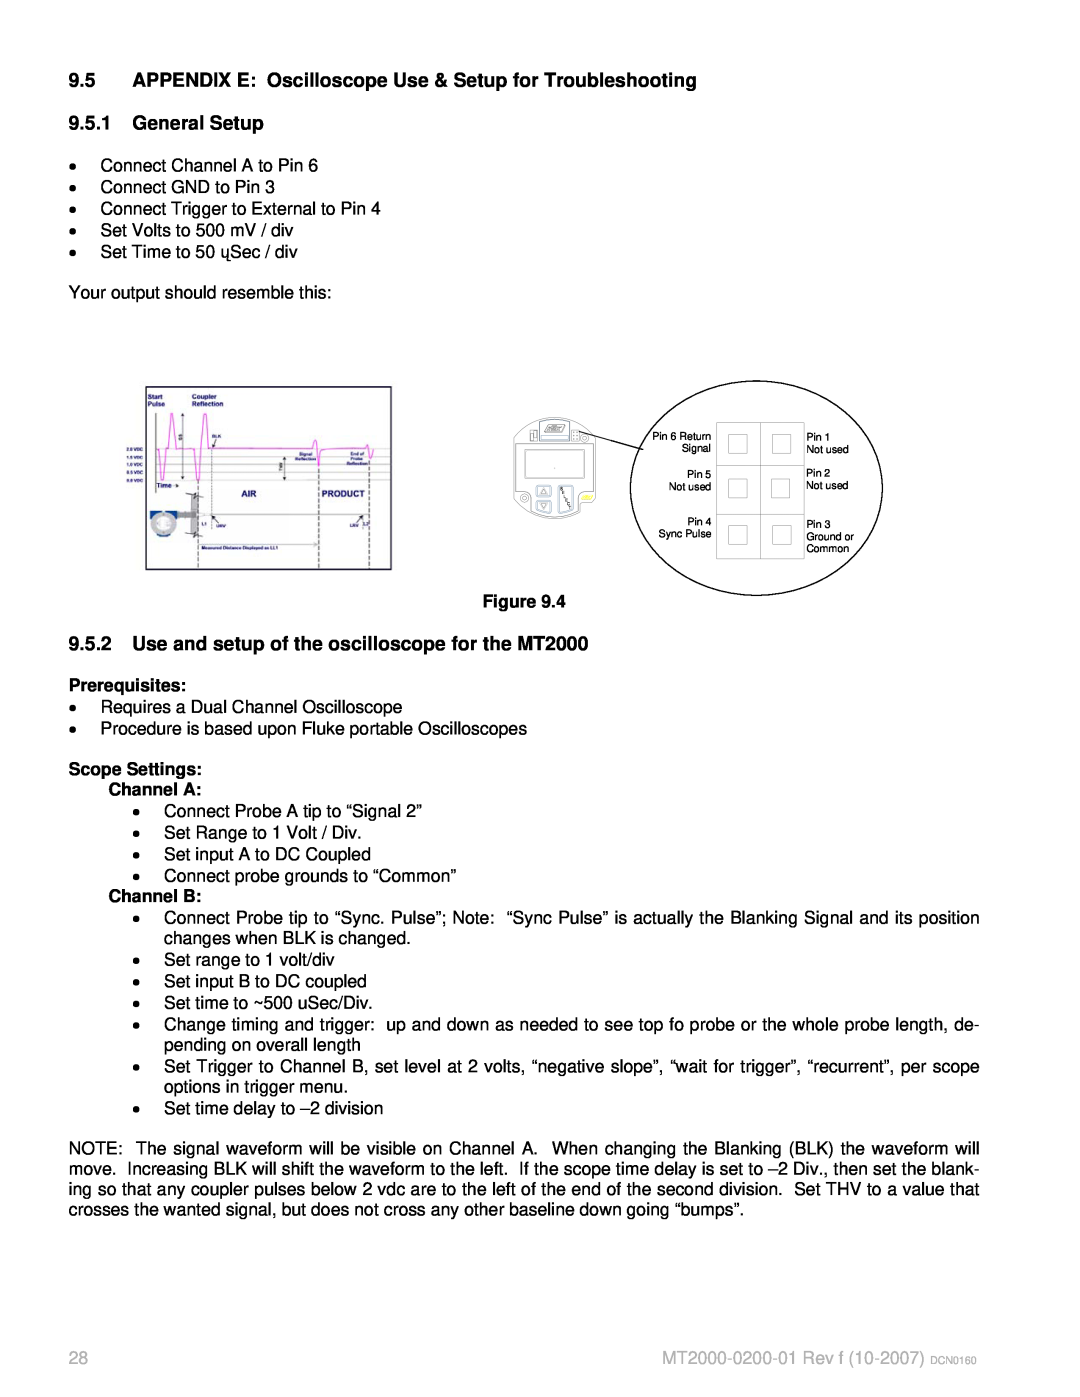 K-Tec MT2000 manual 9.5.1General Setup 